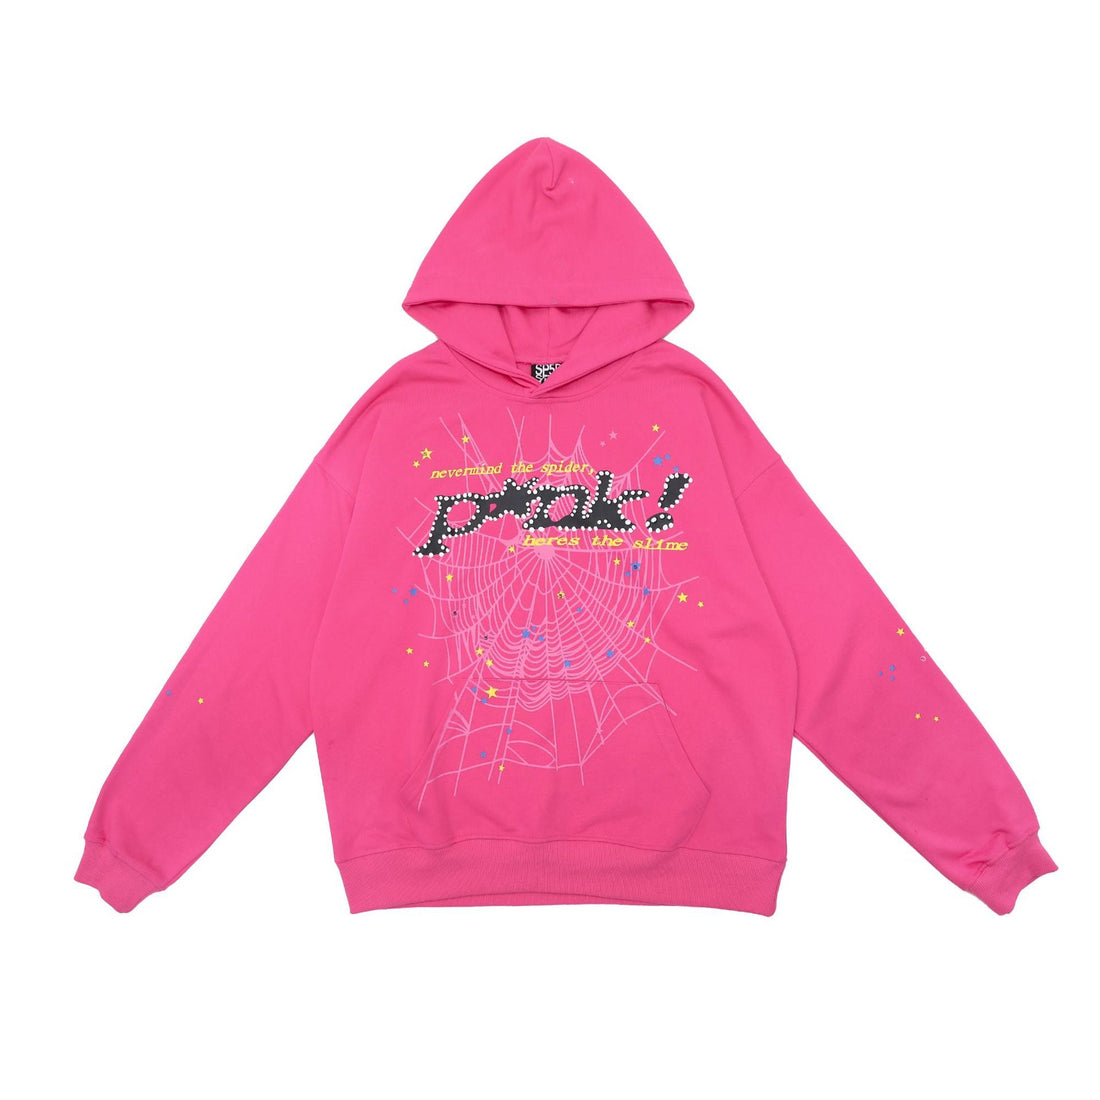 Vibrant Pink Sp5der Hoodie - Trendy Web Print Hooded Sweatshirt - Seakoff